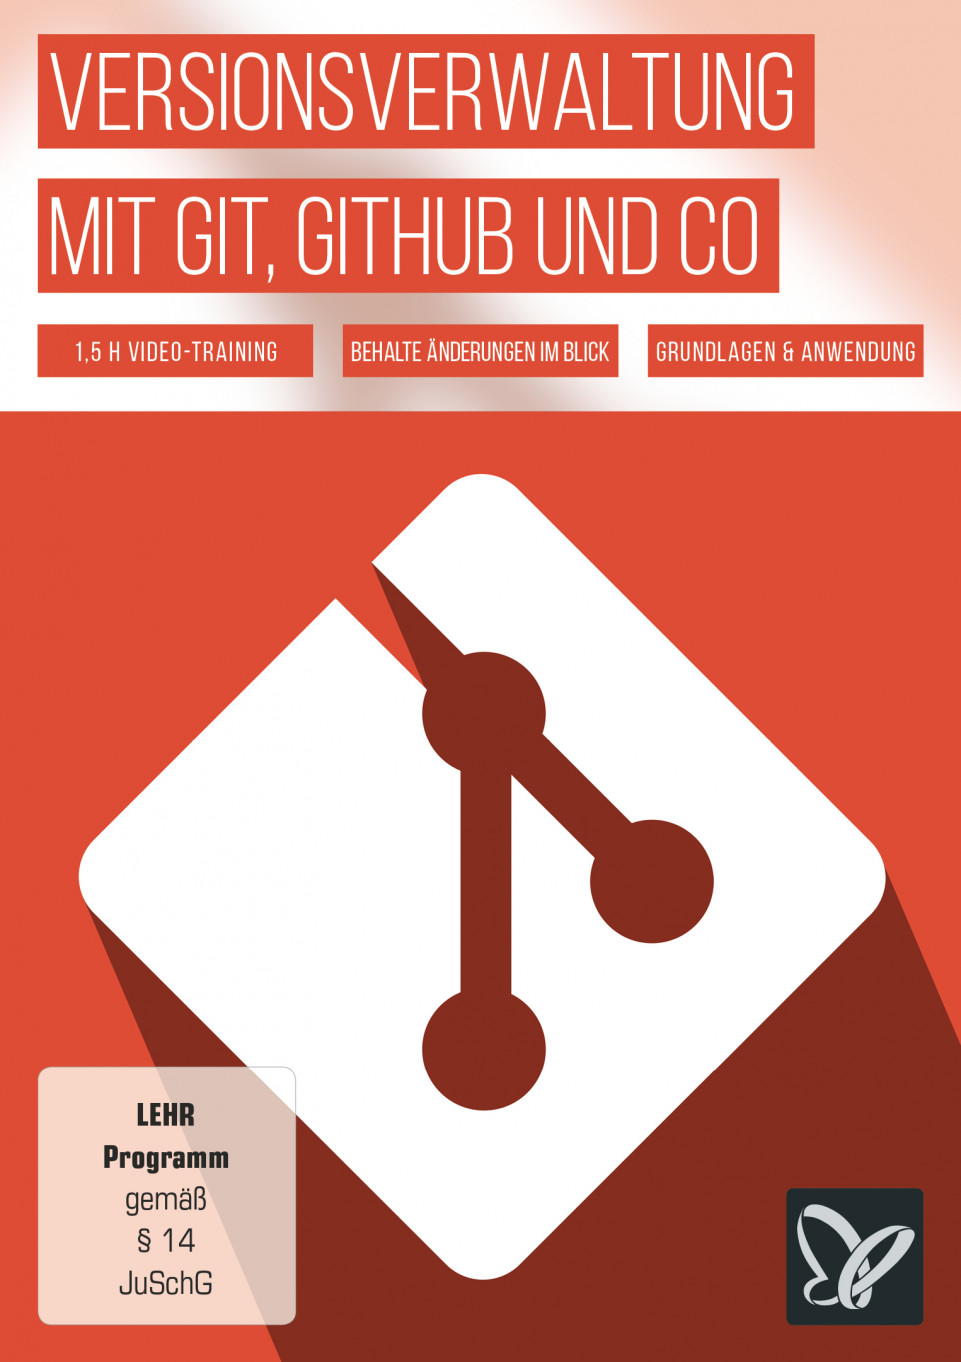 versionsverwaltung-mit-git-github-und-co--onix